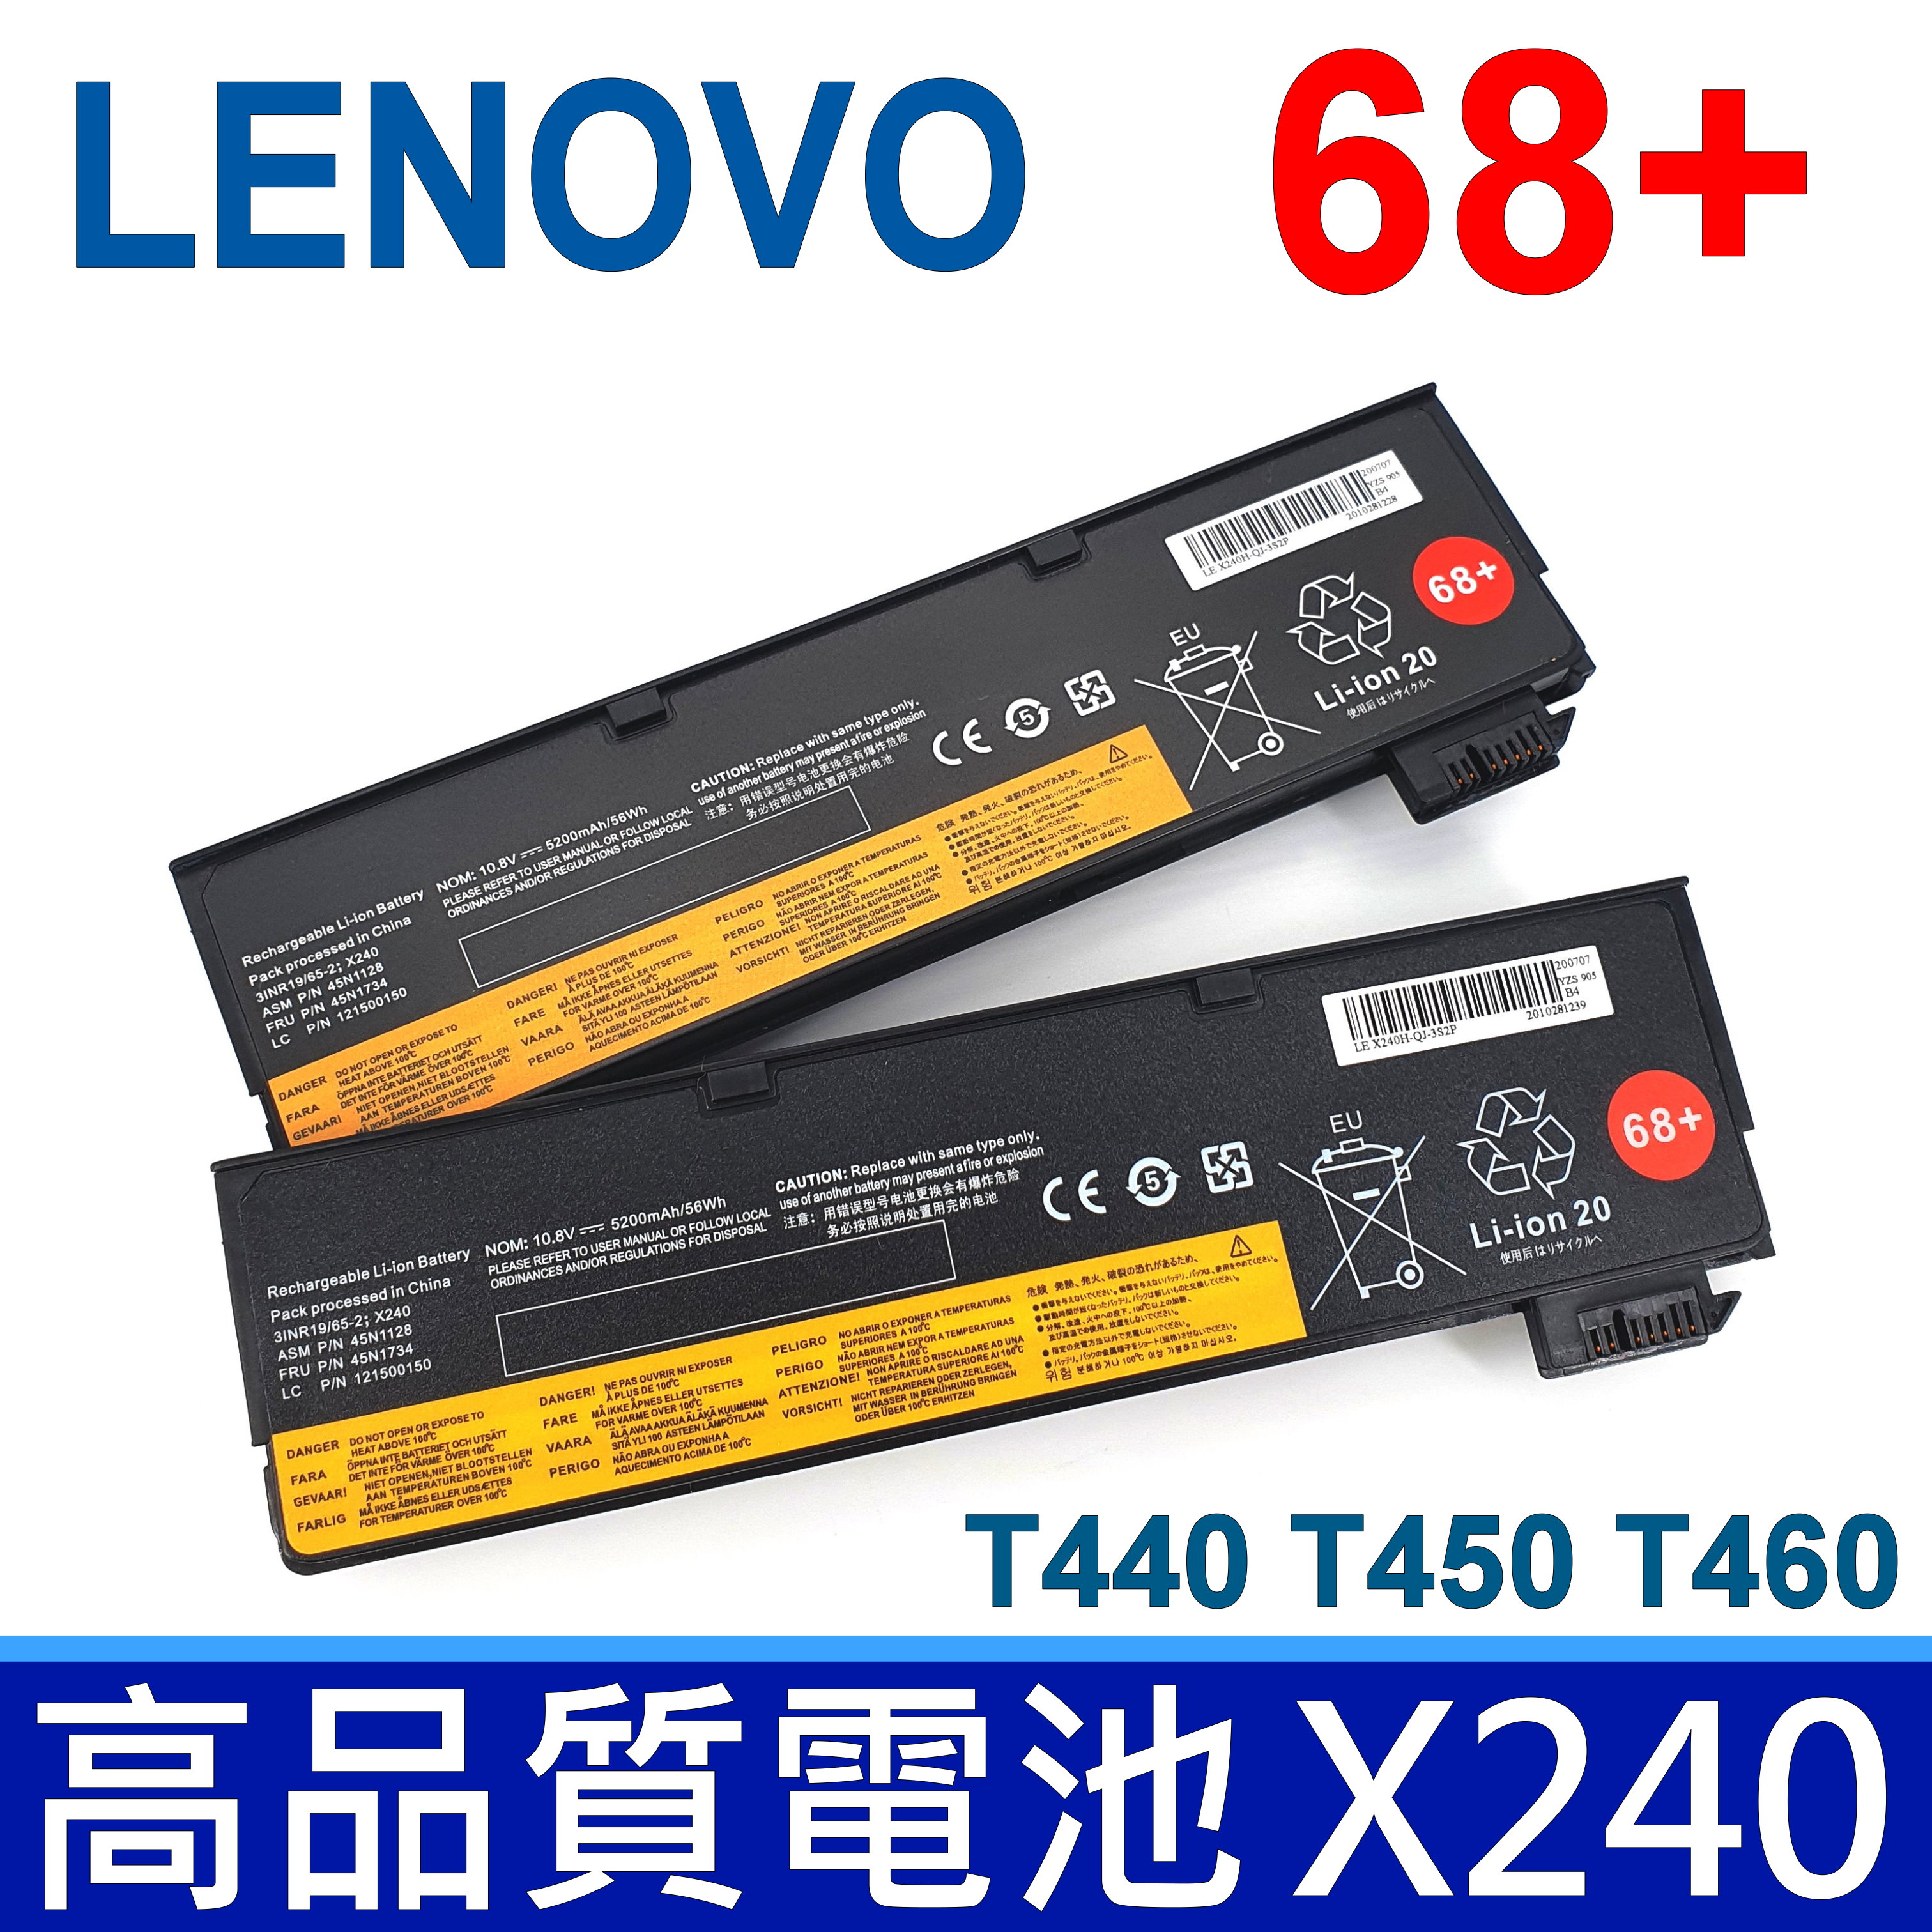 LENOVO X240 68+ 6芯 原廠規格 電池 X240 X240S X250 T470 T470P LENOVO X240 68+ 6芯 原廠規格 電池 X240 X240S X250 T470 T470P